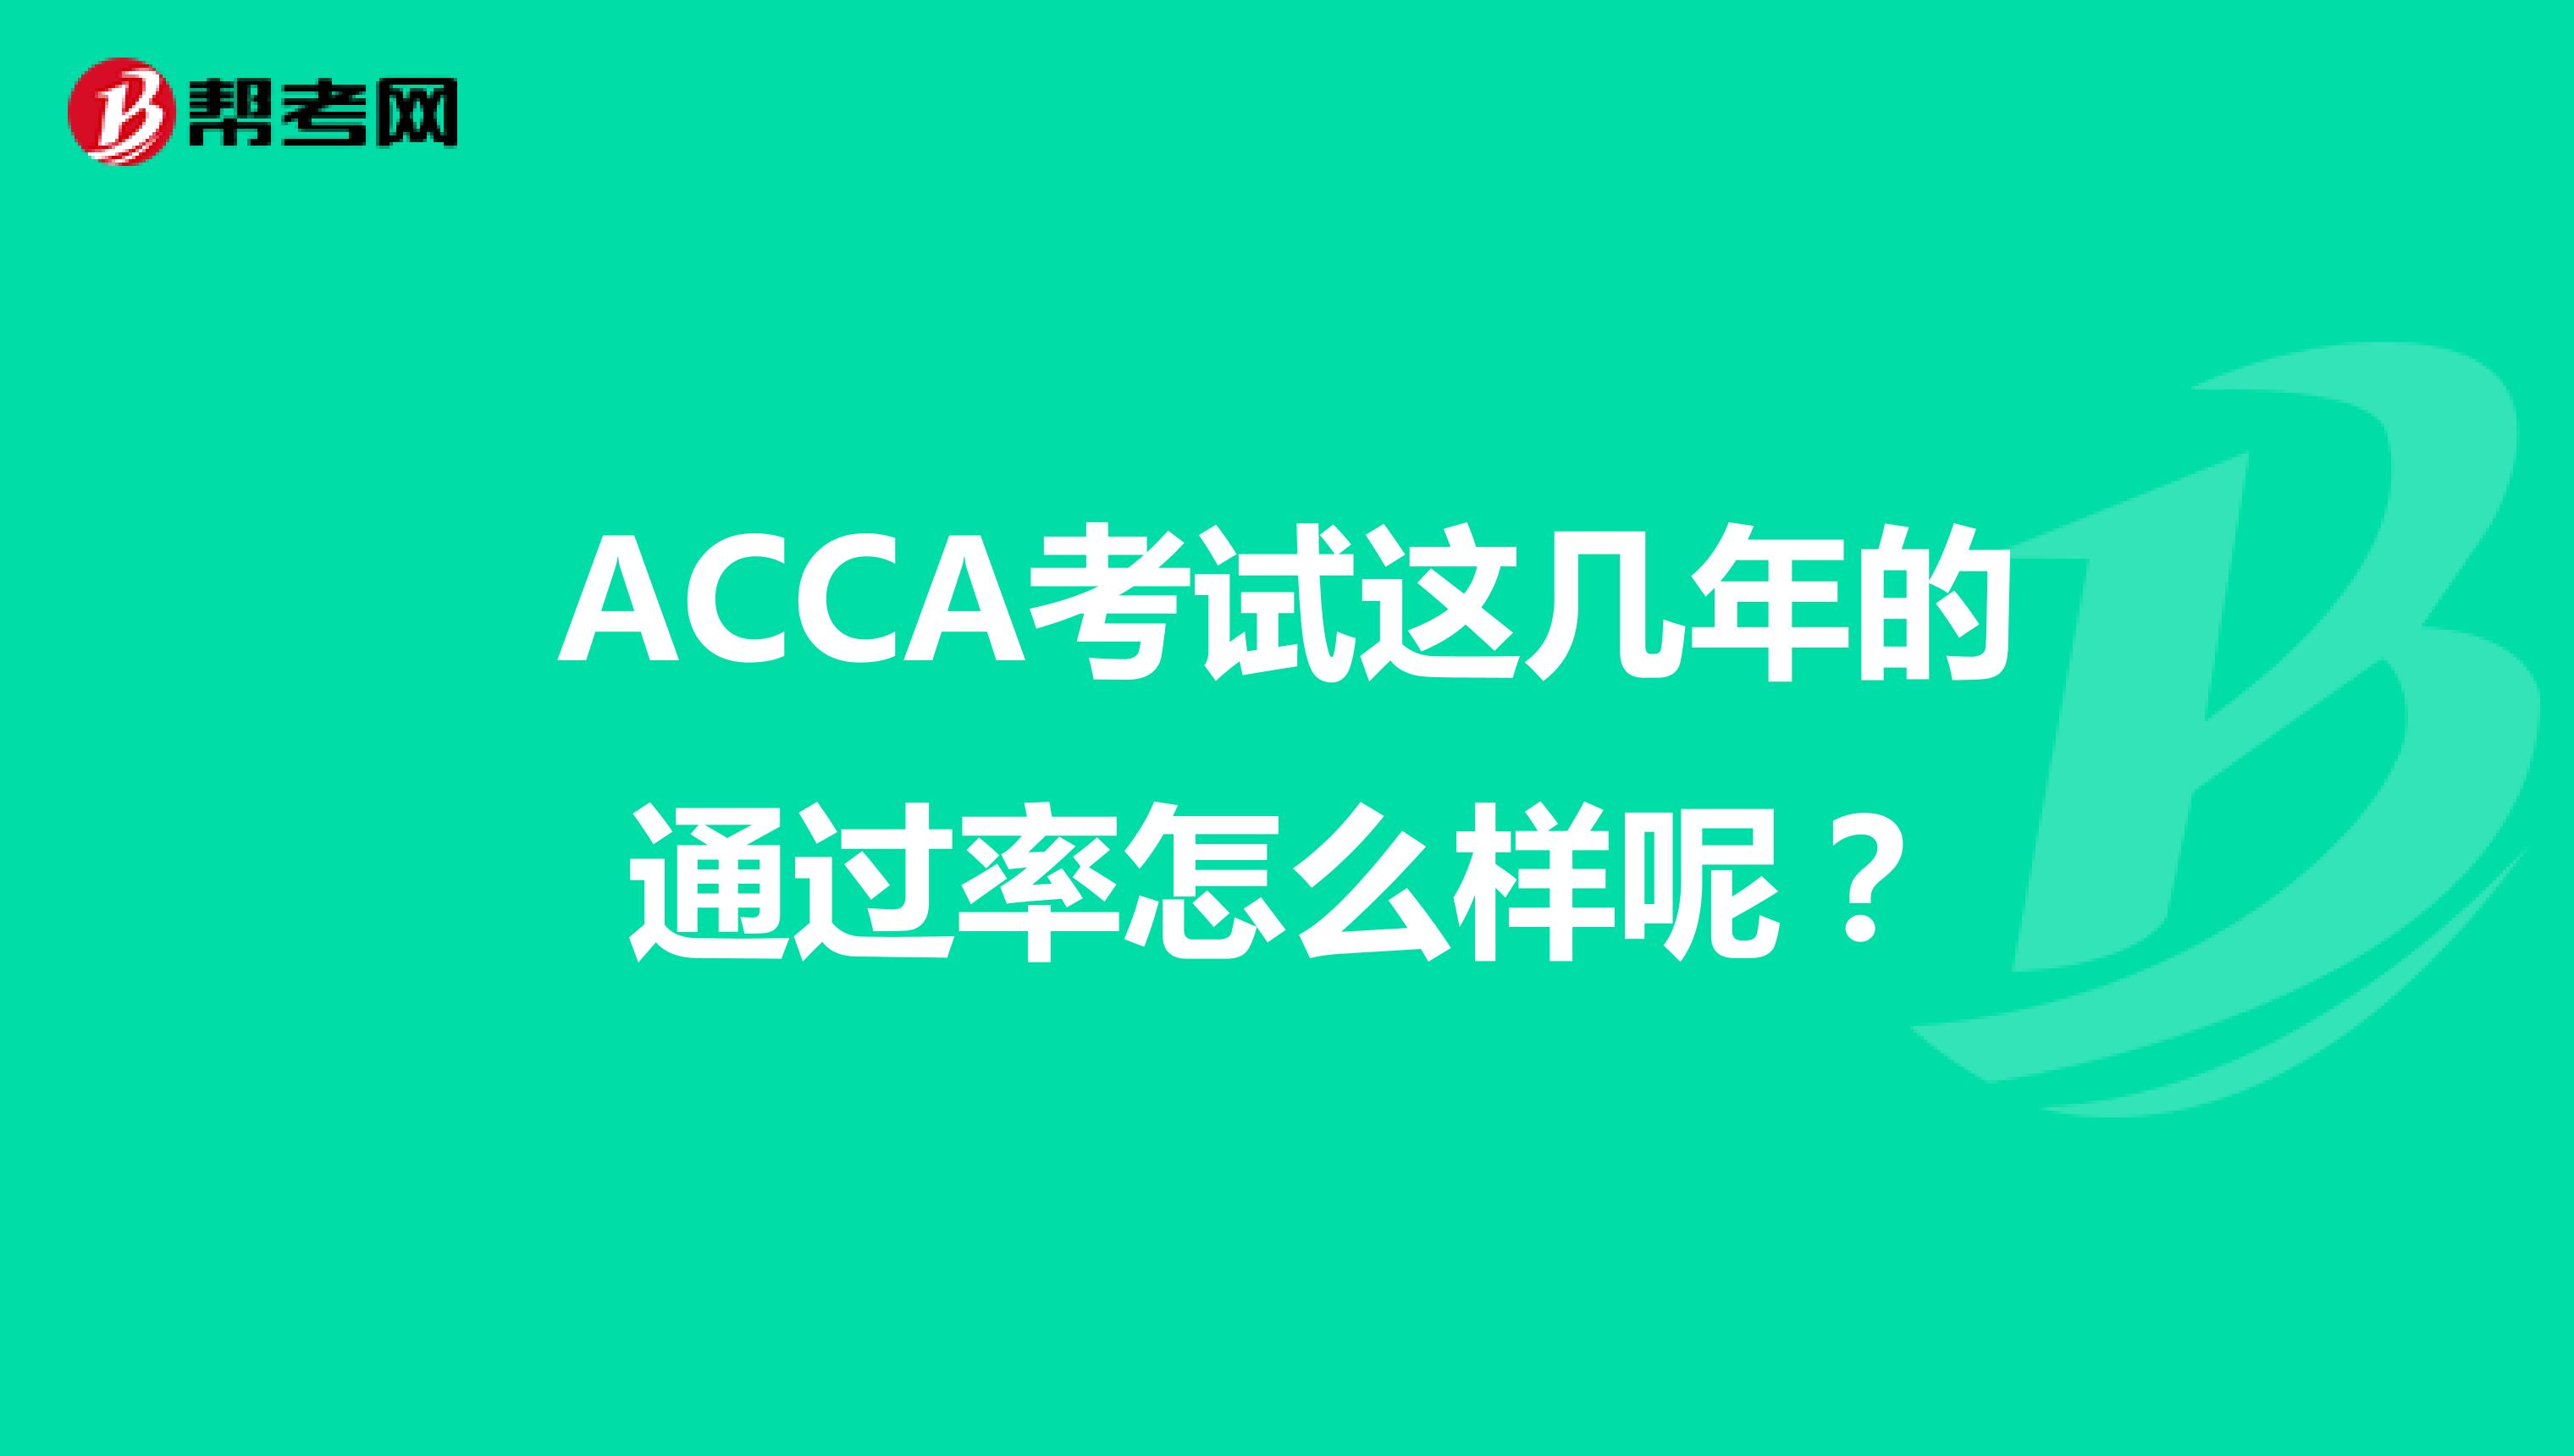 ACCA考试这几年的通过率怎么样呢？